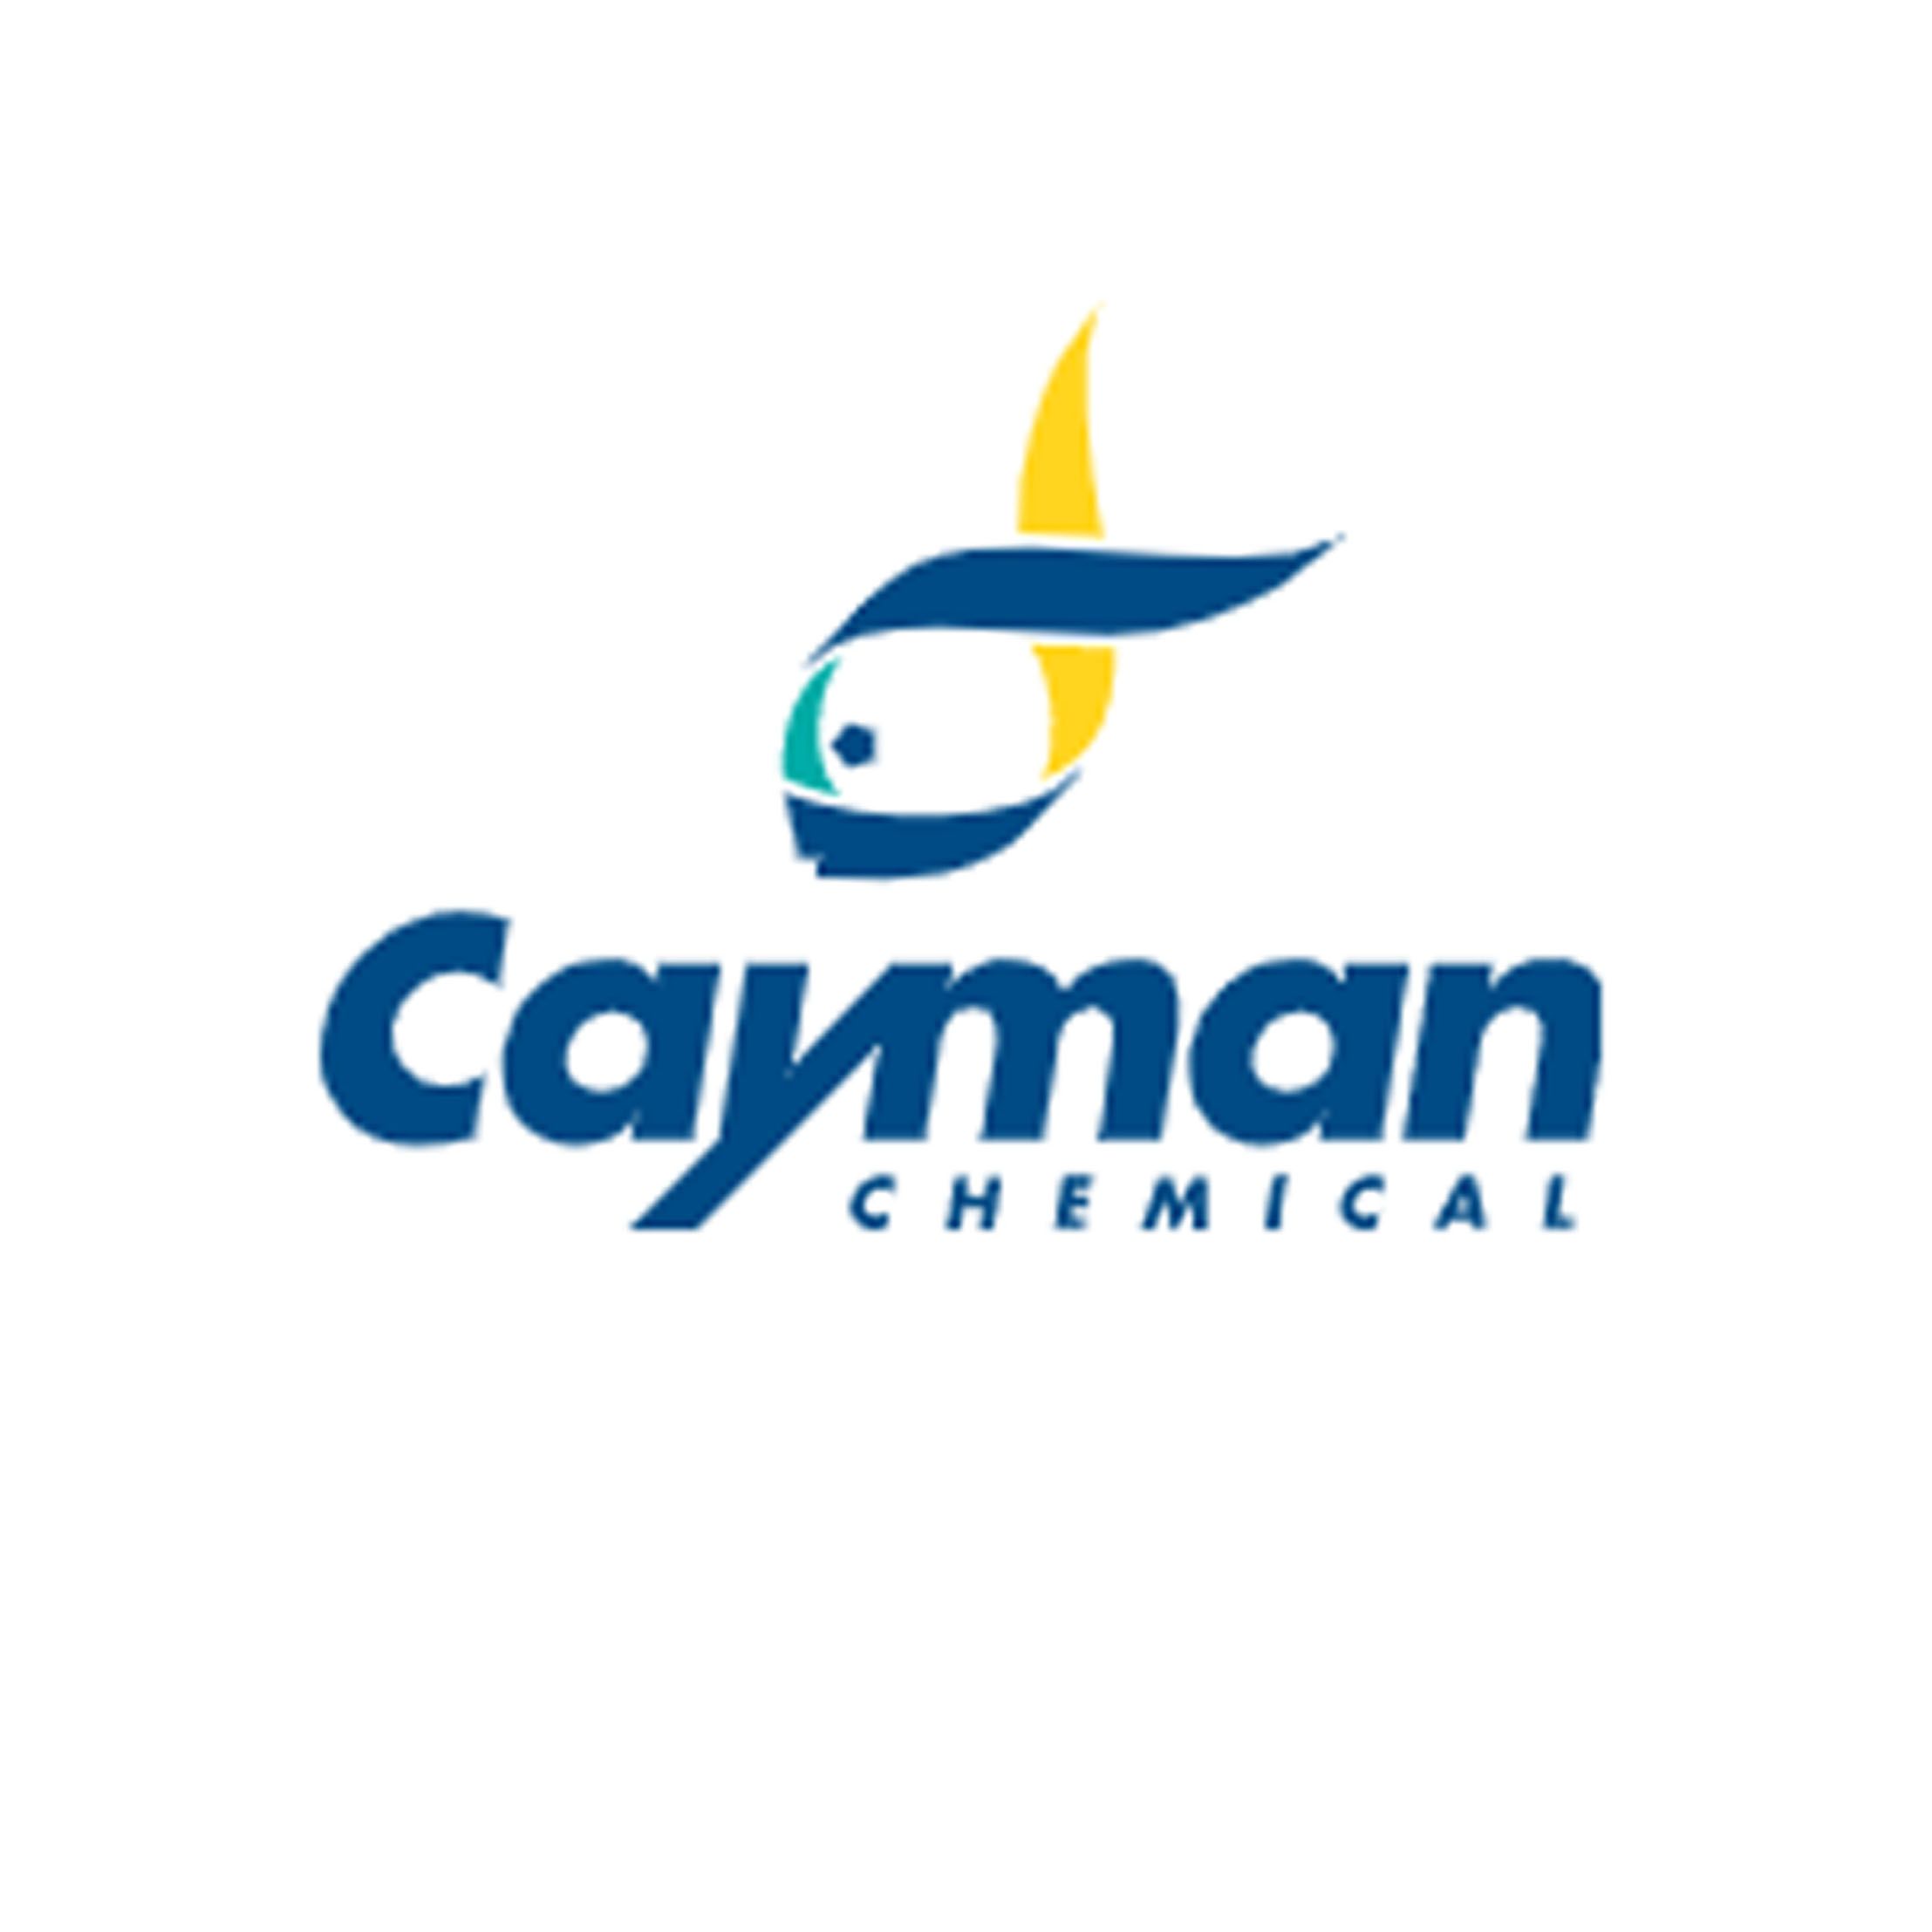 Cayman 500360 Cortisol ELISA Kit皮质醇检测ELISA试剂盒-96次分析（可拆卸），现货